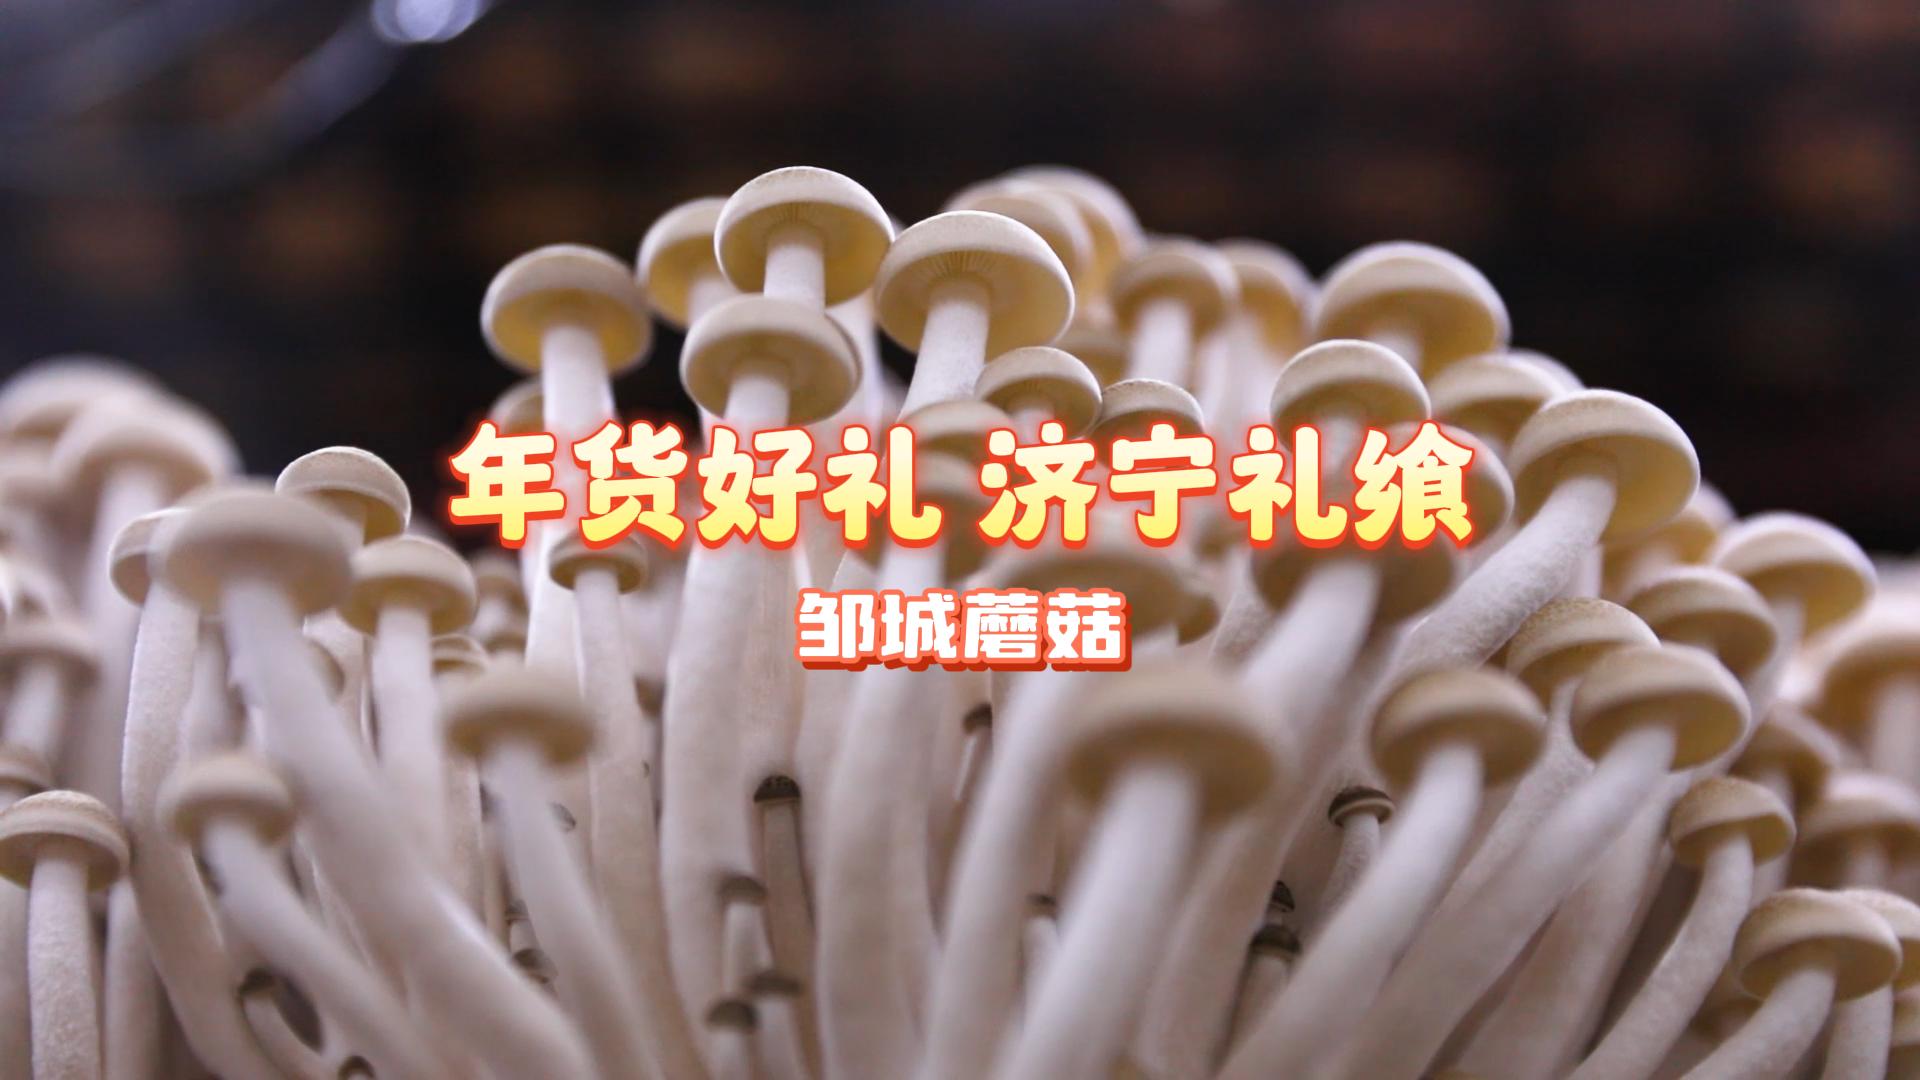 更济宁 | 年货好礼 济宁礼飨——邹城蘑菇